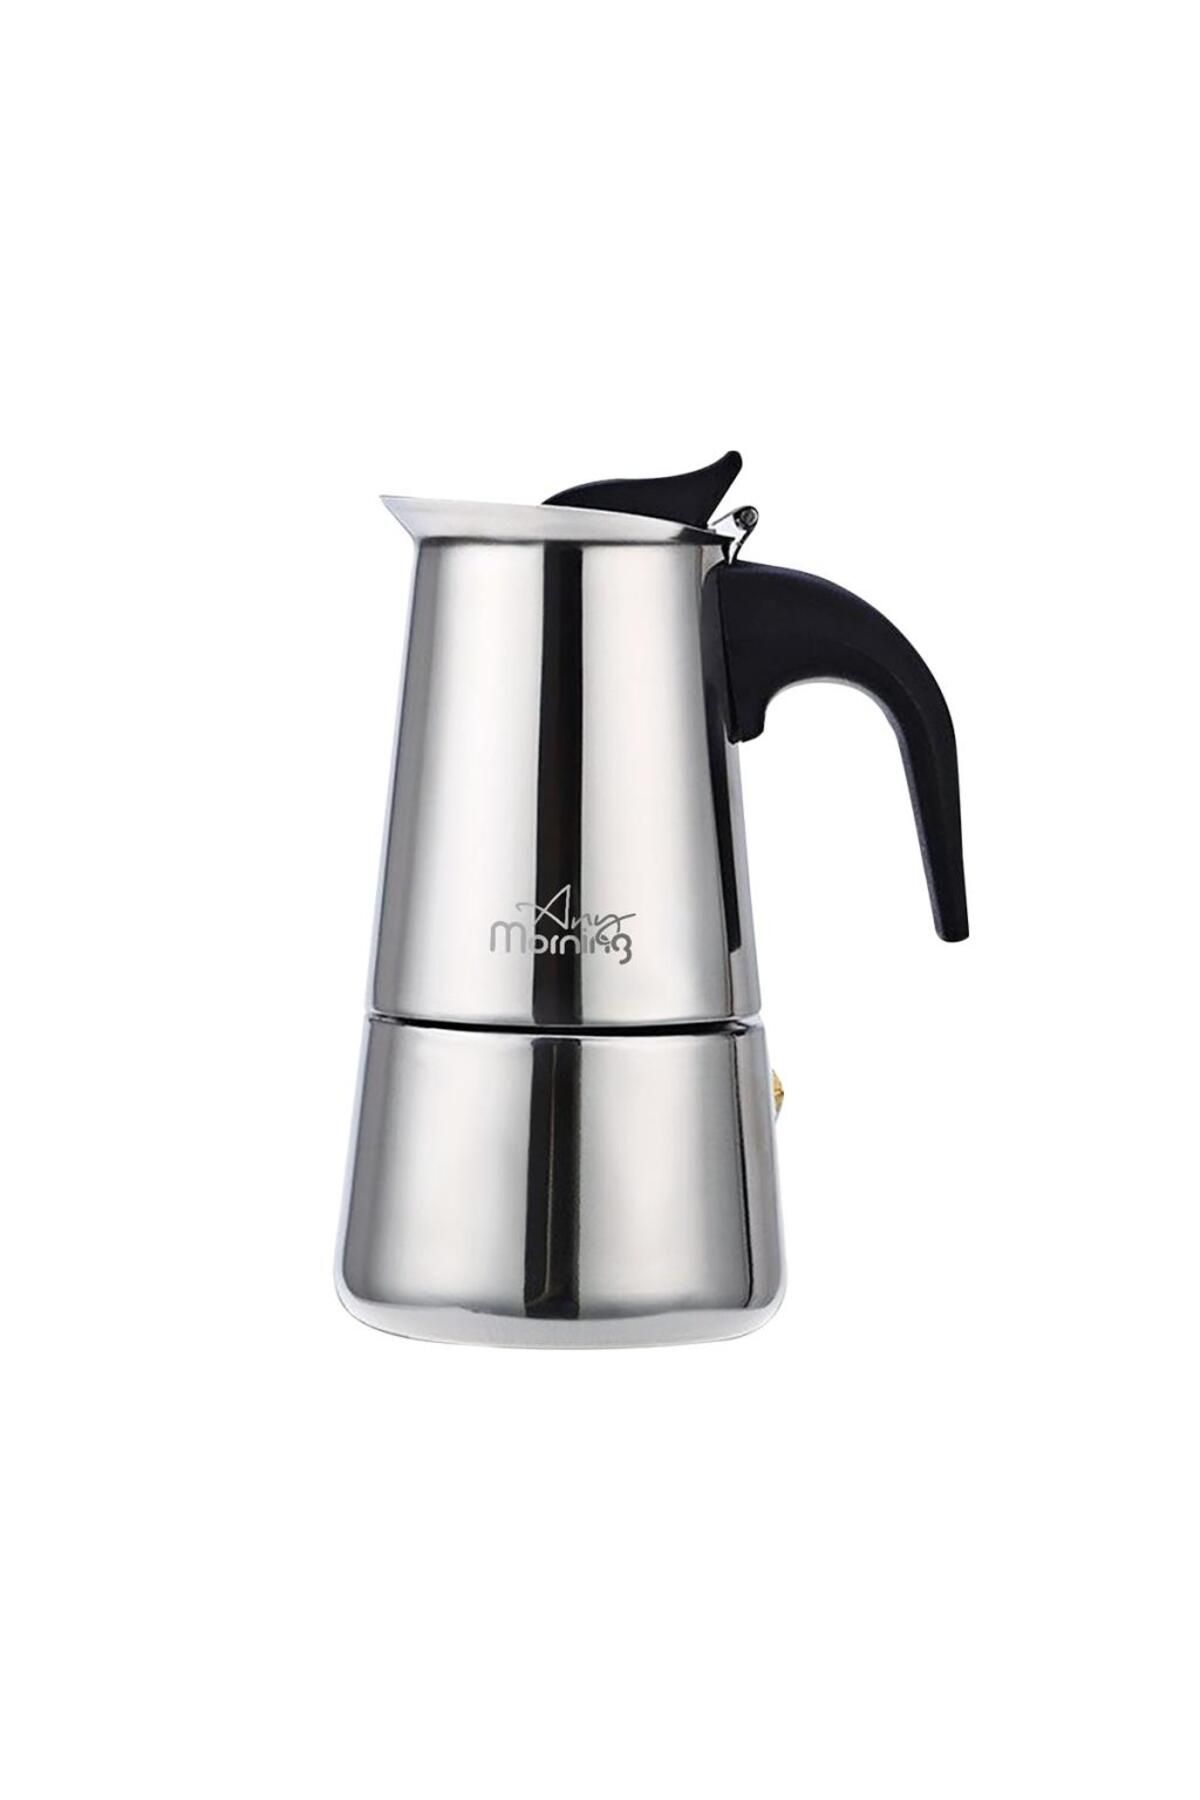 Any Morning Fe001-6 Espresso Kahve Makinesi Paslanmaz Çelik Indüksiyonlu Moka Pot 300 ml